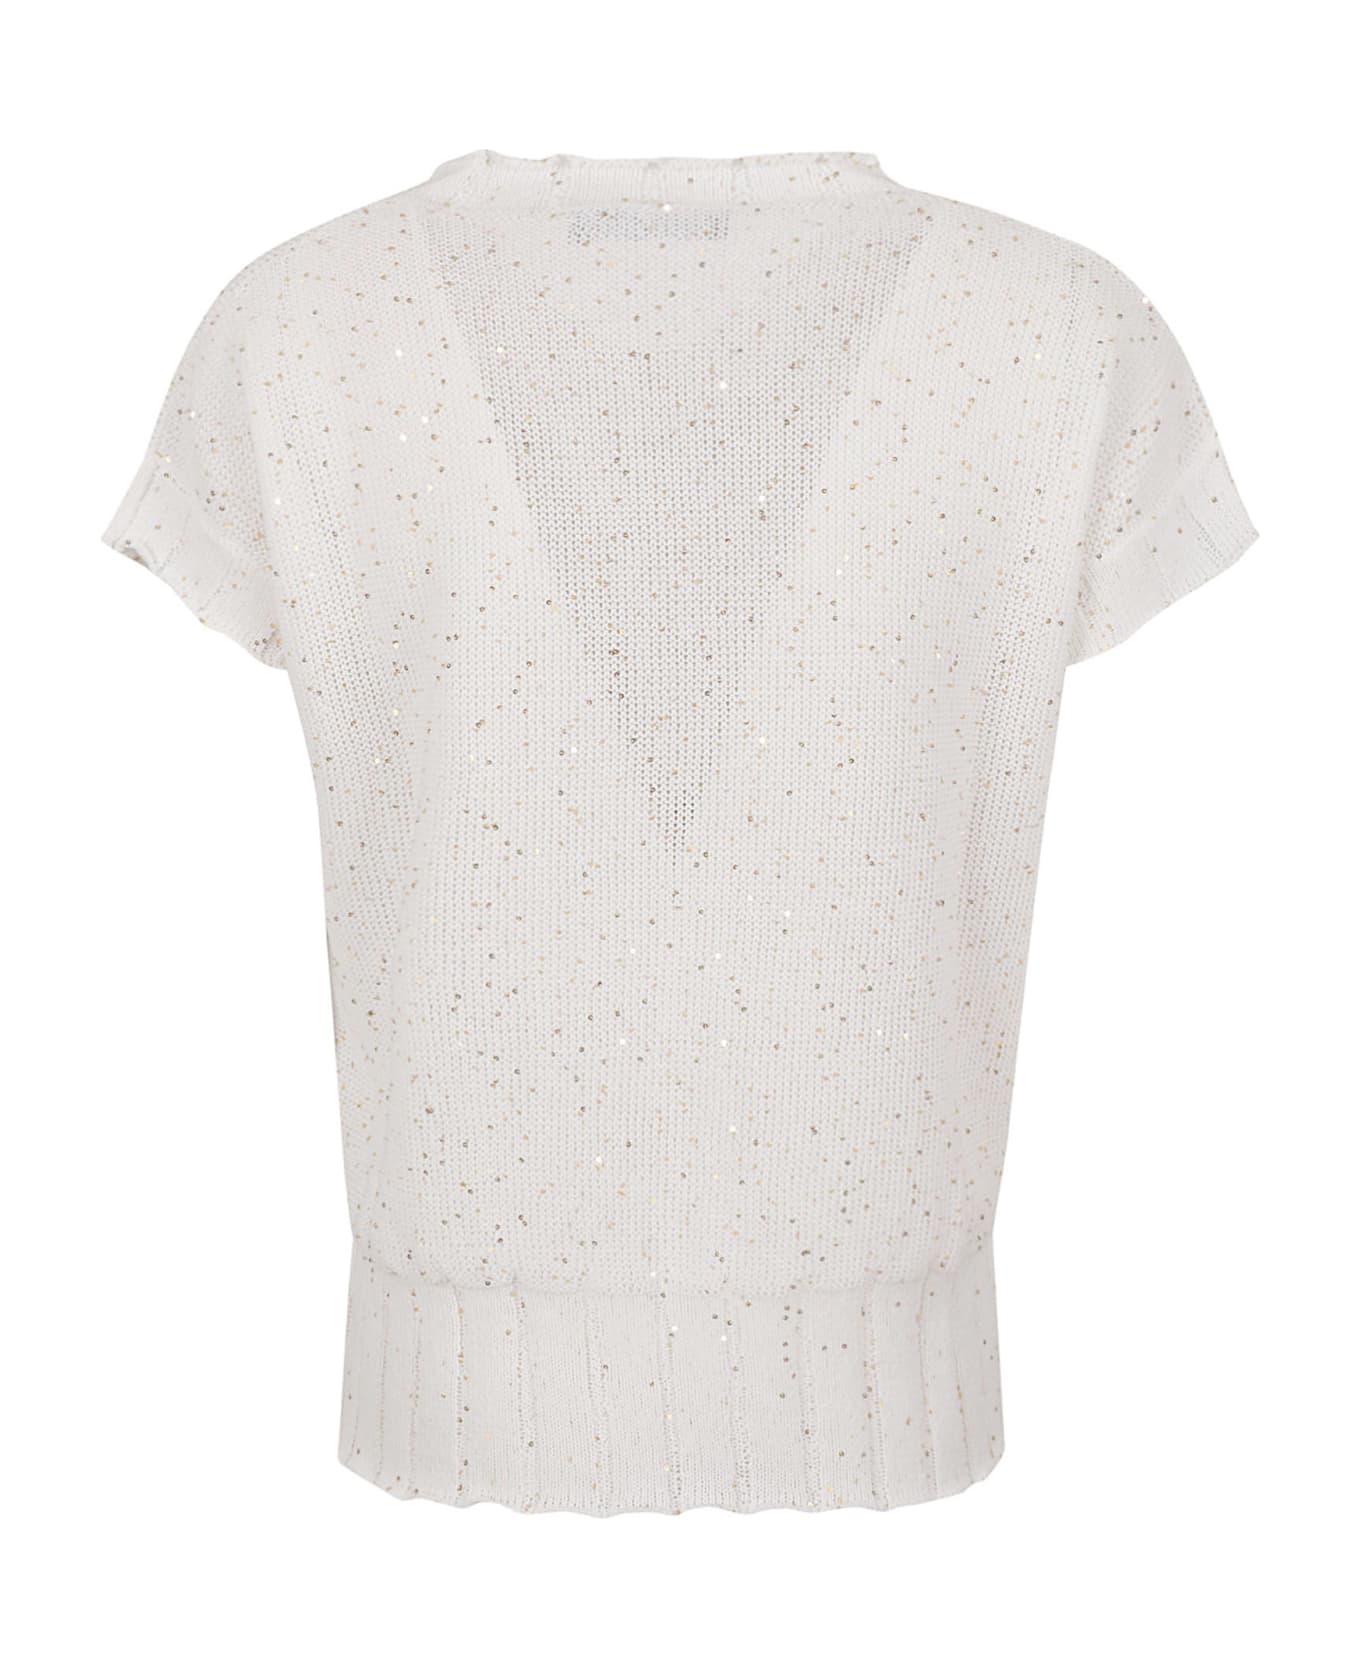 Lorena Antoniazzi Side Slit Embellished Knit Top - White